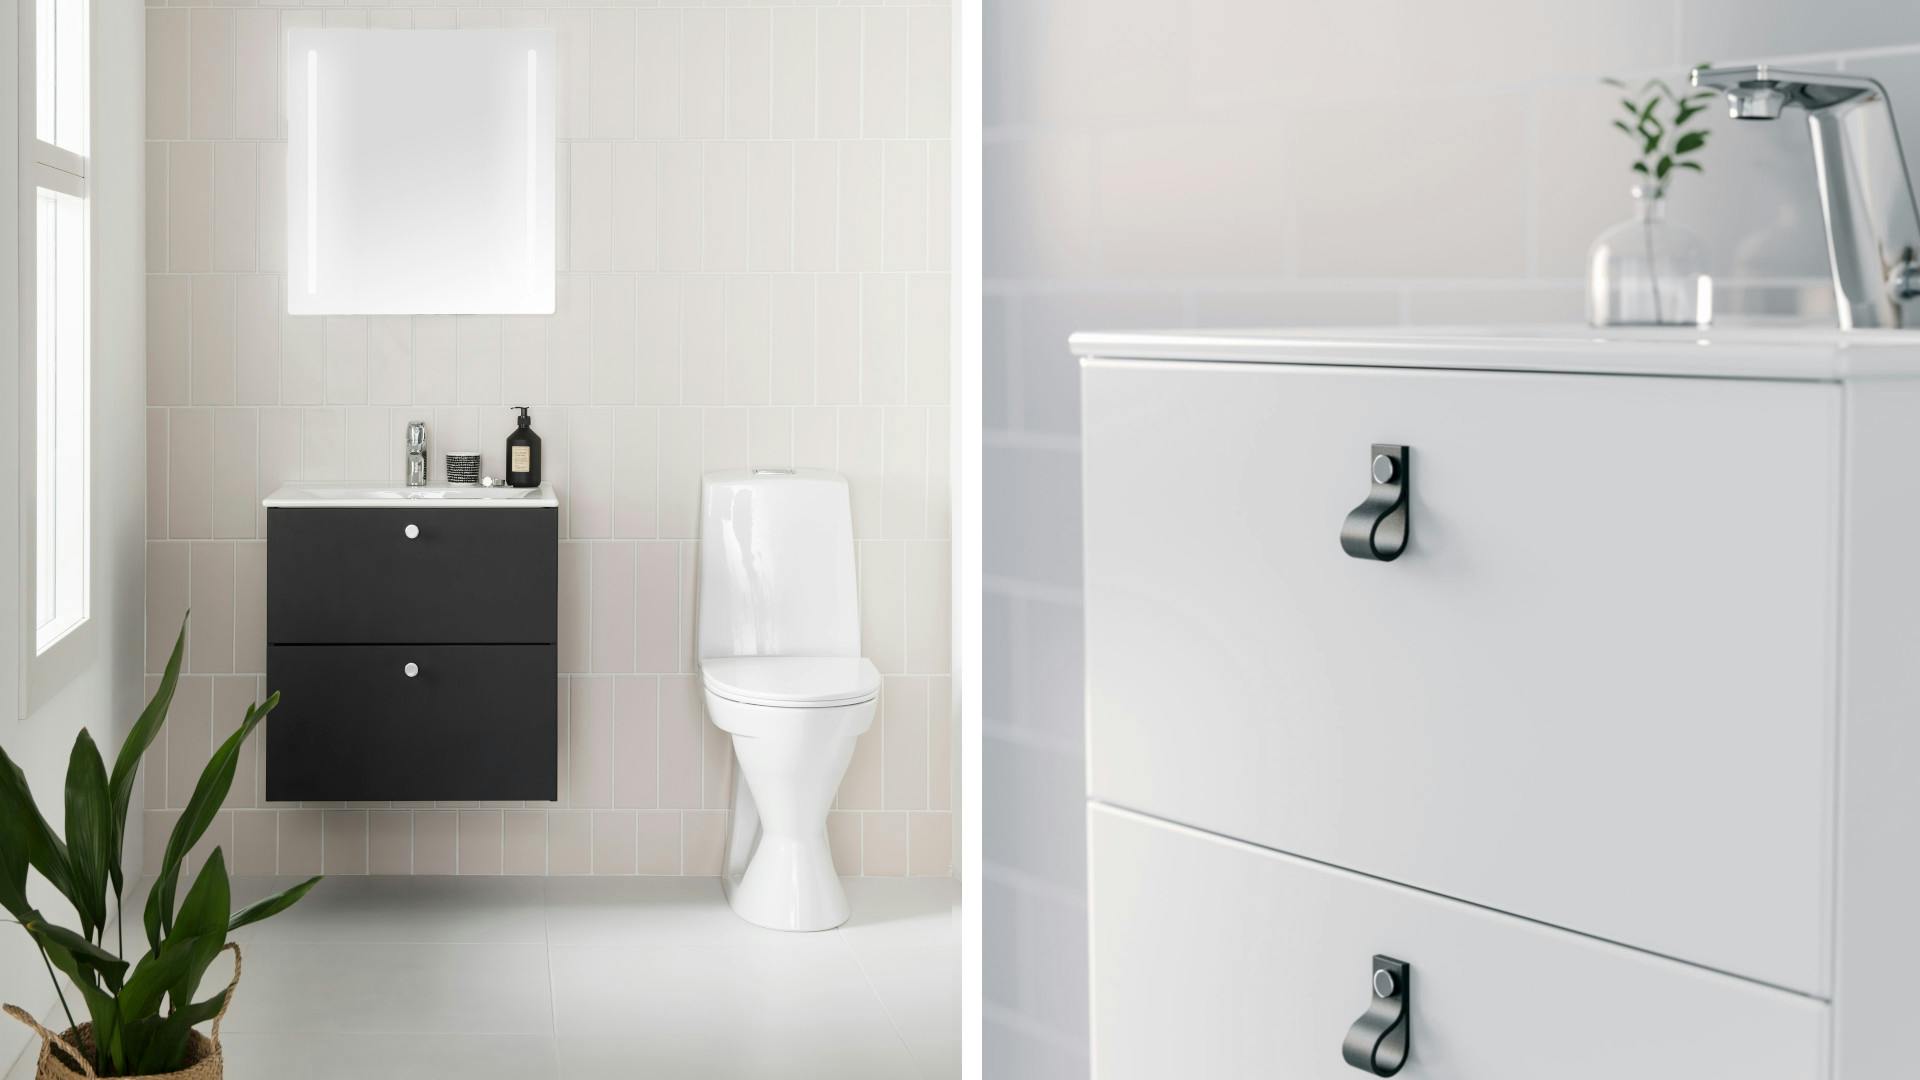 IDOn monipuoliset kalustesarjat sopivat monen kokoiseen ja tyyliseen kylpyhuoneeseen. IDO Elegantin alakaappeja ja tasoaltaita on saatavilla kahdessa eri syvyydessä.